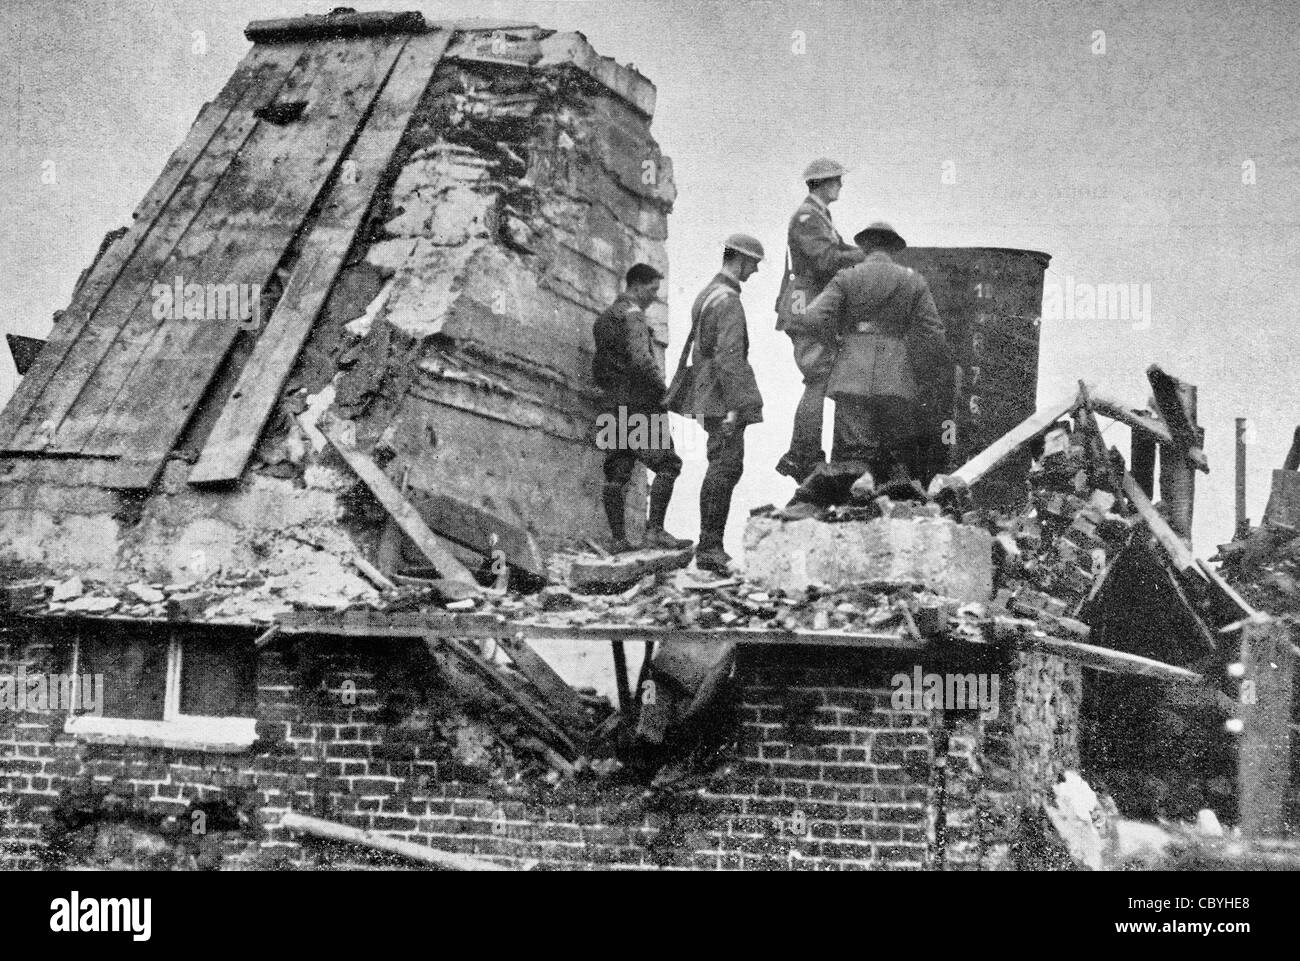 Tourner les tables sur le Germain - un poste d'observation Allemand capturés et utilisés par les Britanniques - Première Guerre mondiale Banque D'Images